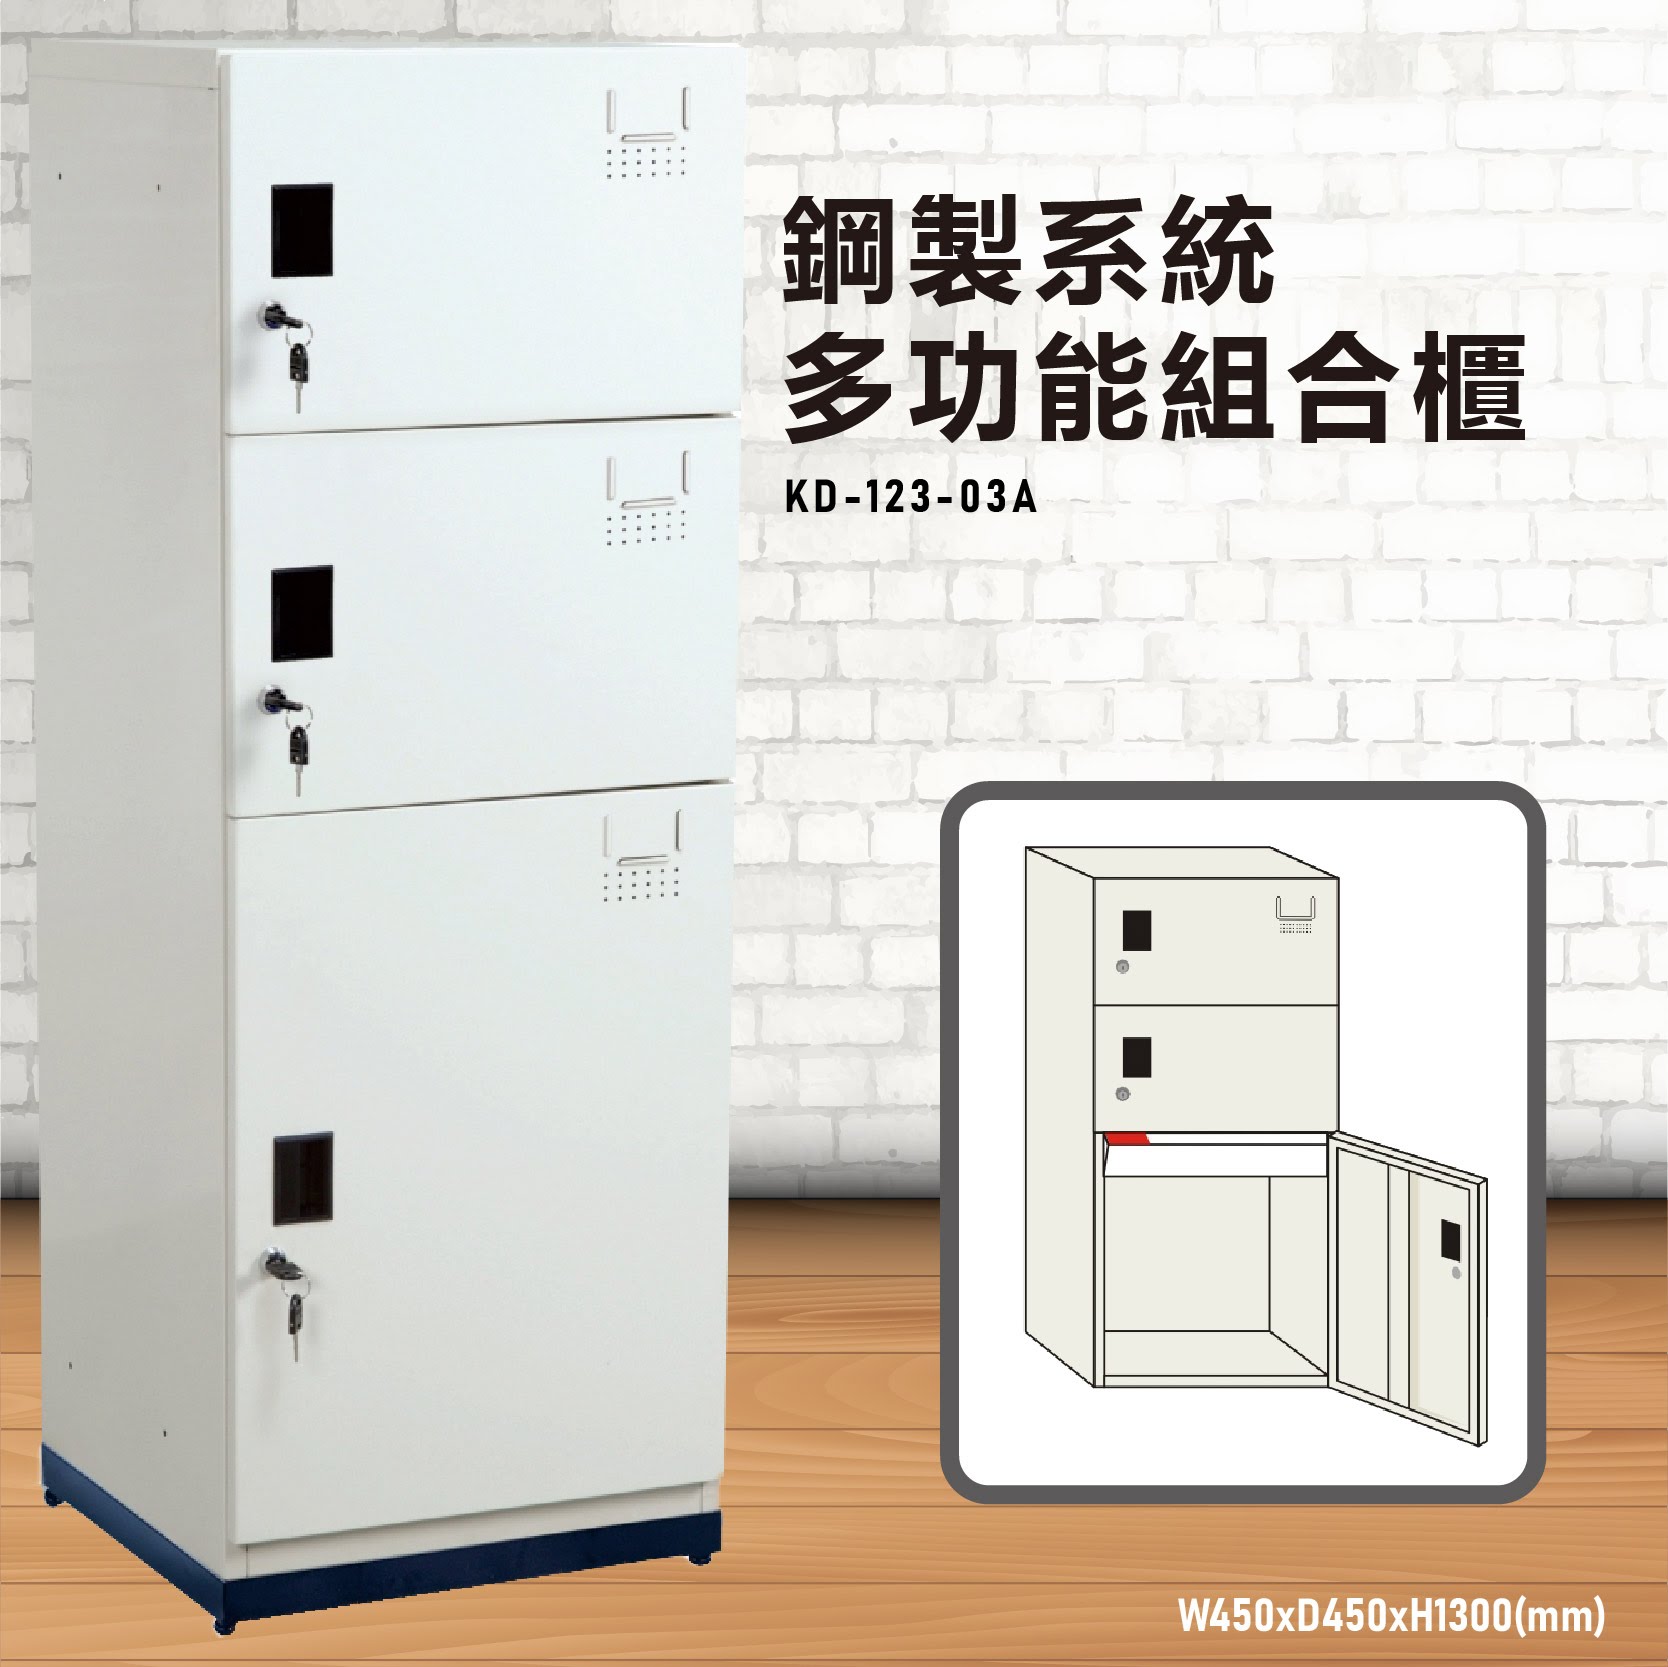 【鑰匙櫃】大富 KD-123-03A 鋼製系統多功能組合櫃 置物櫃 存放櫃 收納櫃 更衣櫃 衣櫃 鞋櫃 員工 宿舍